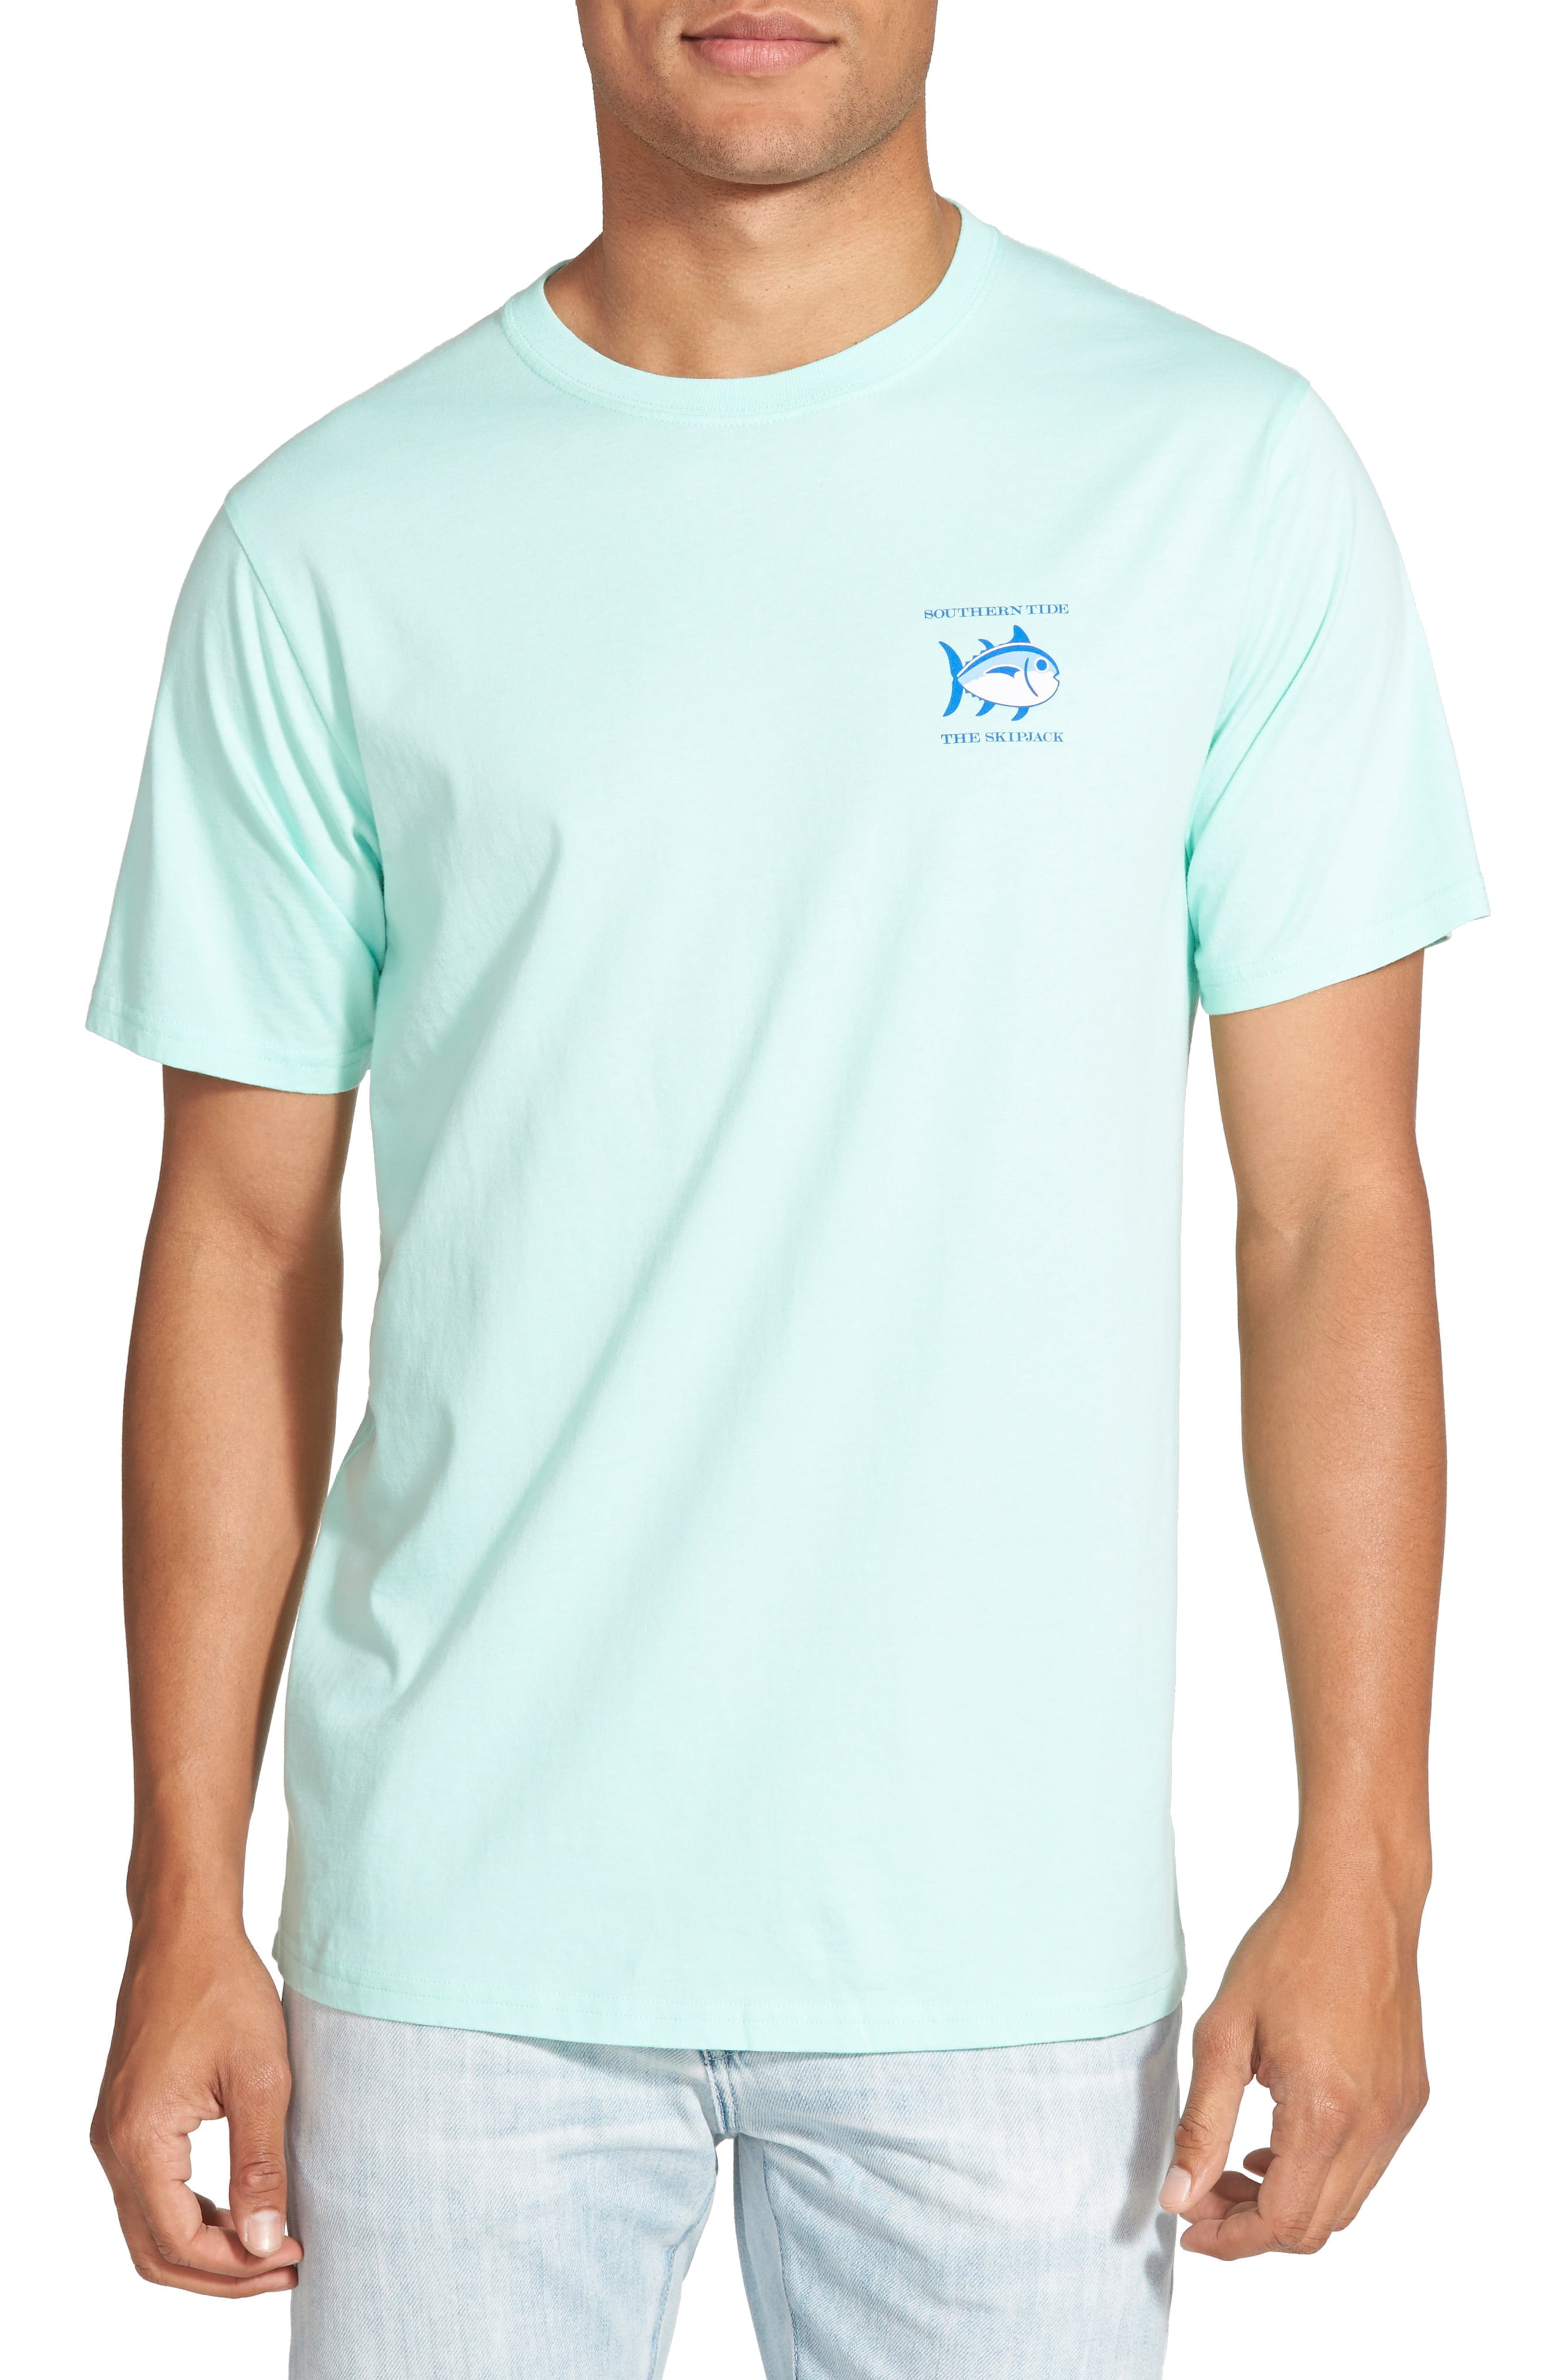 Southern Tide - Mens T-Shirt Aqua Medium Skipjack Fish Tee M - Walmart ...